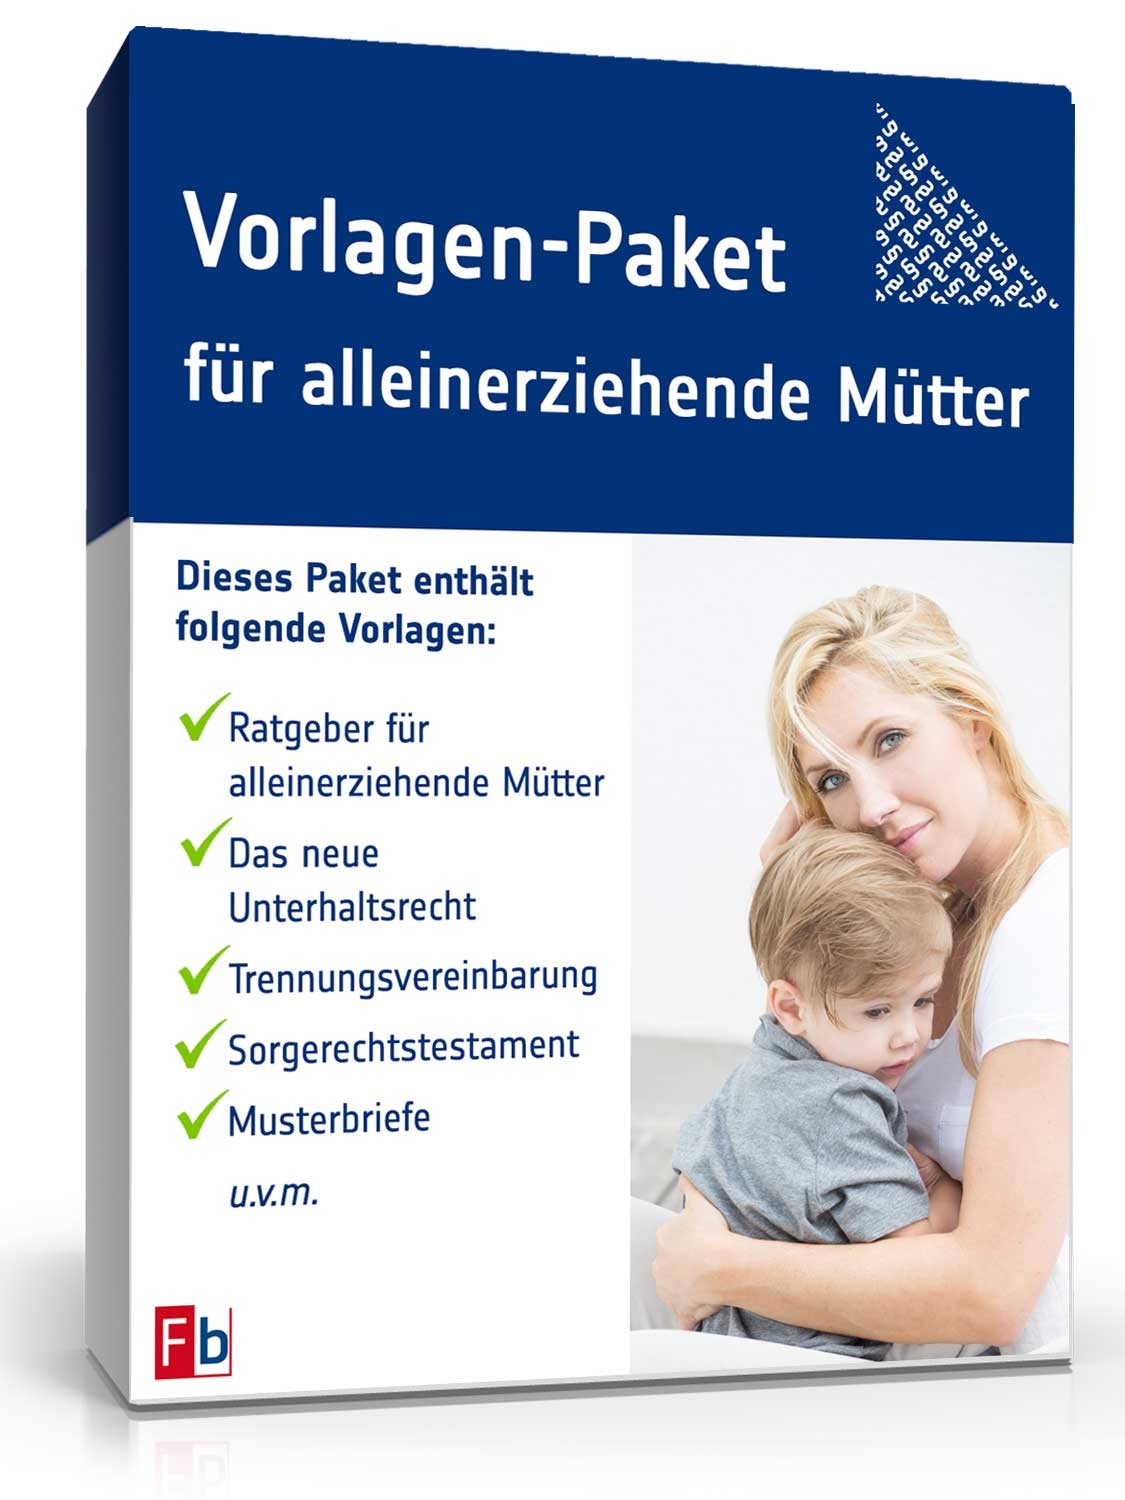 Hauptbild des Produkts: Vorlagen-Paket für alleinerziehende Mütter